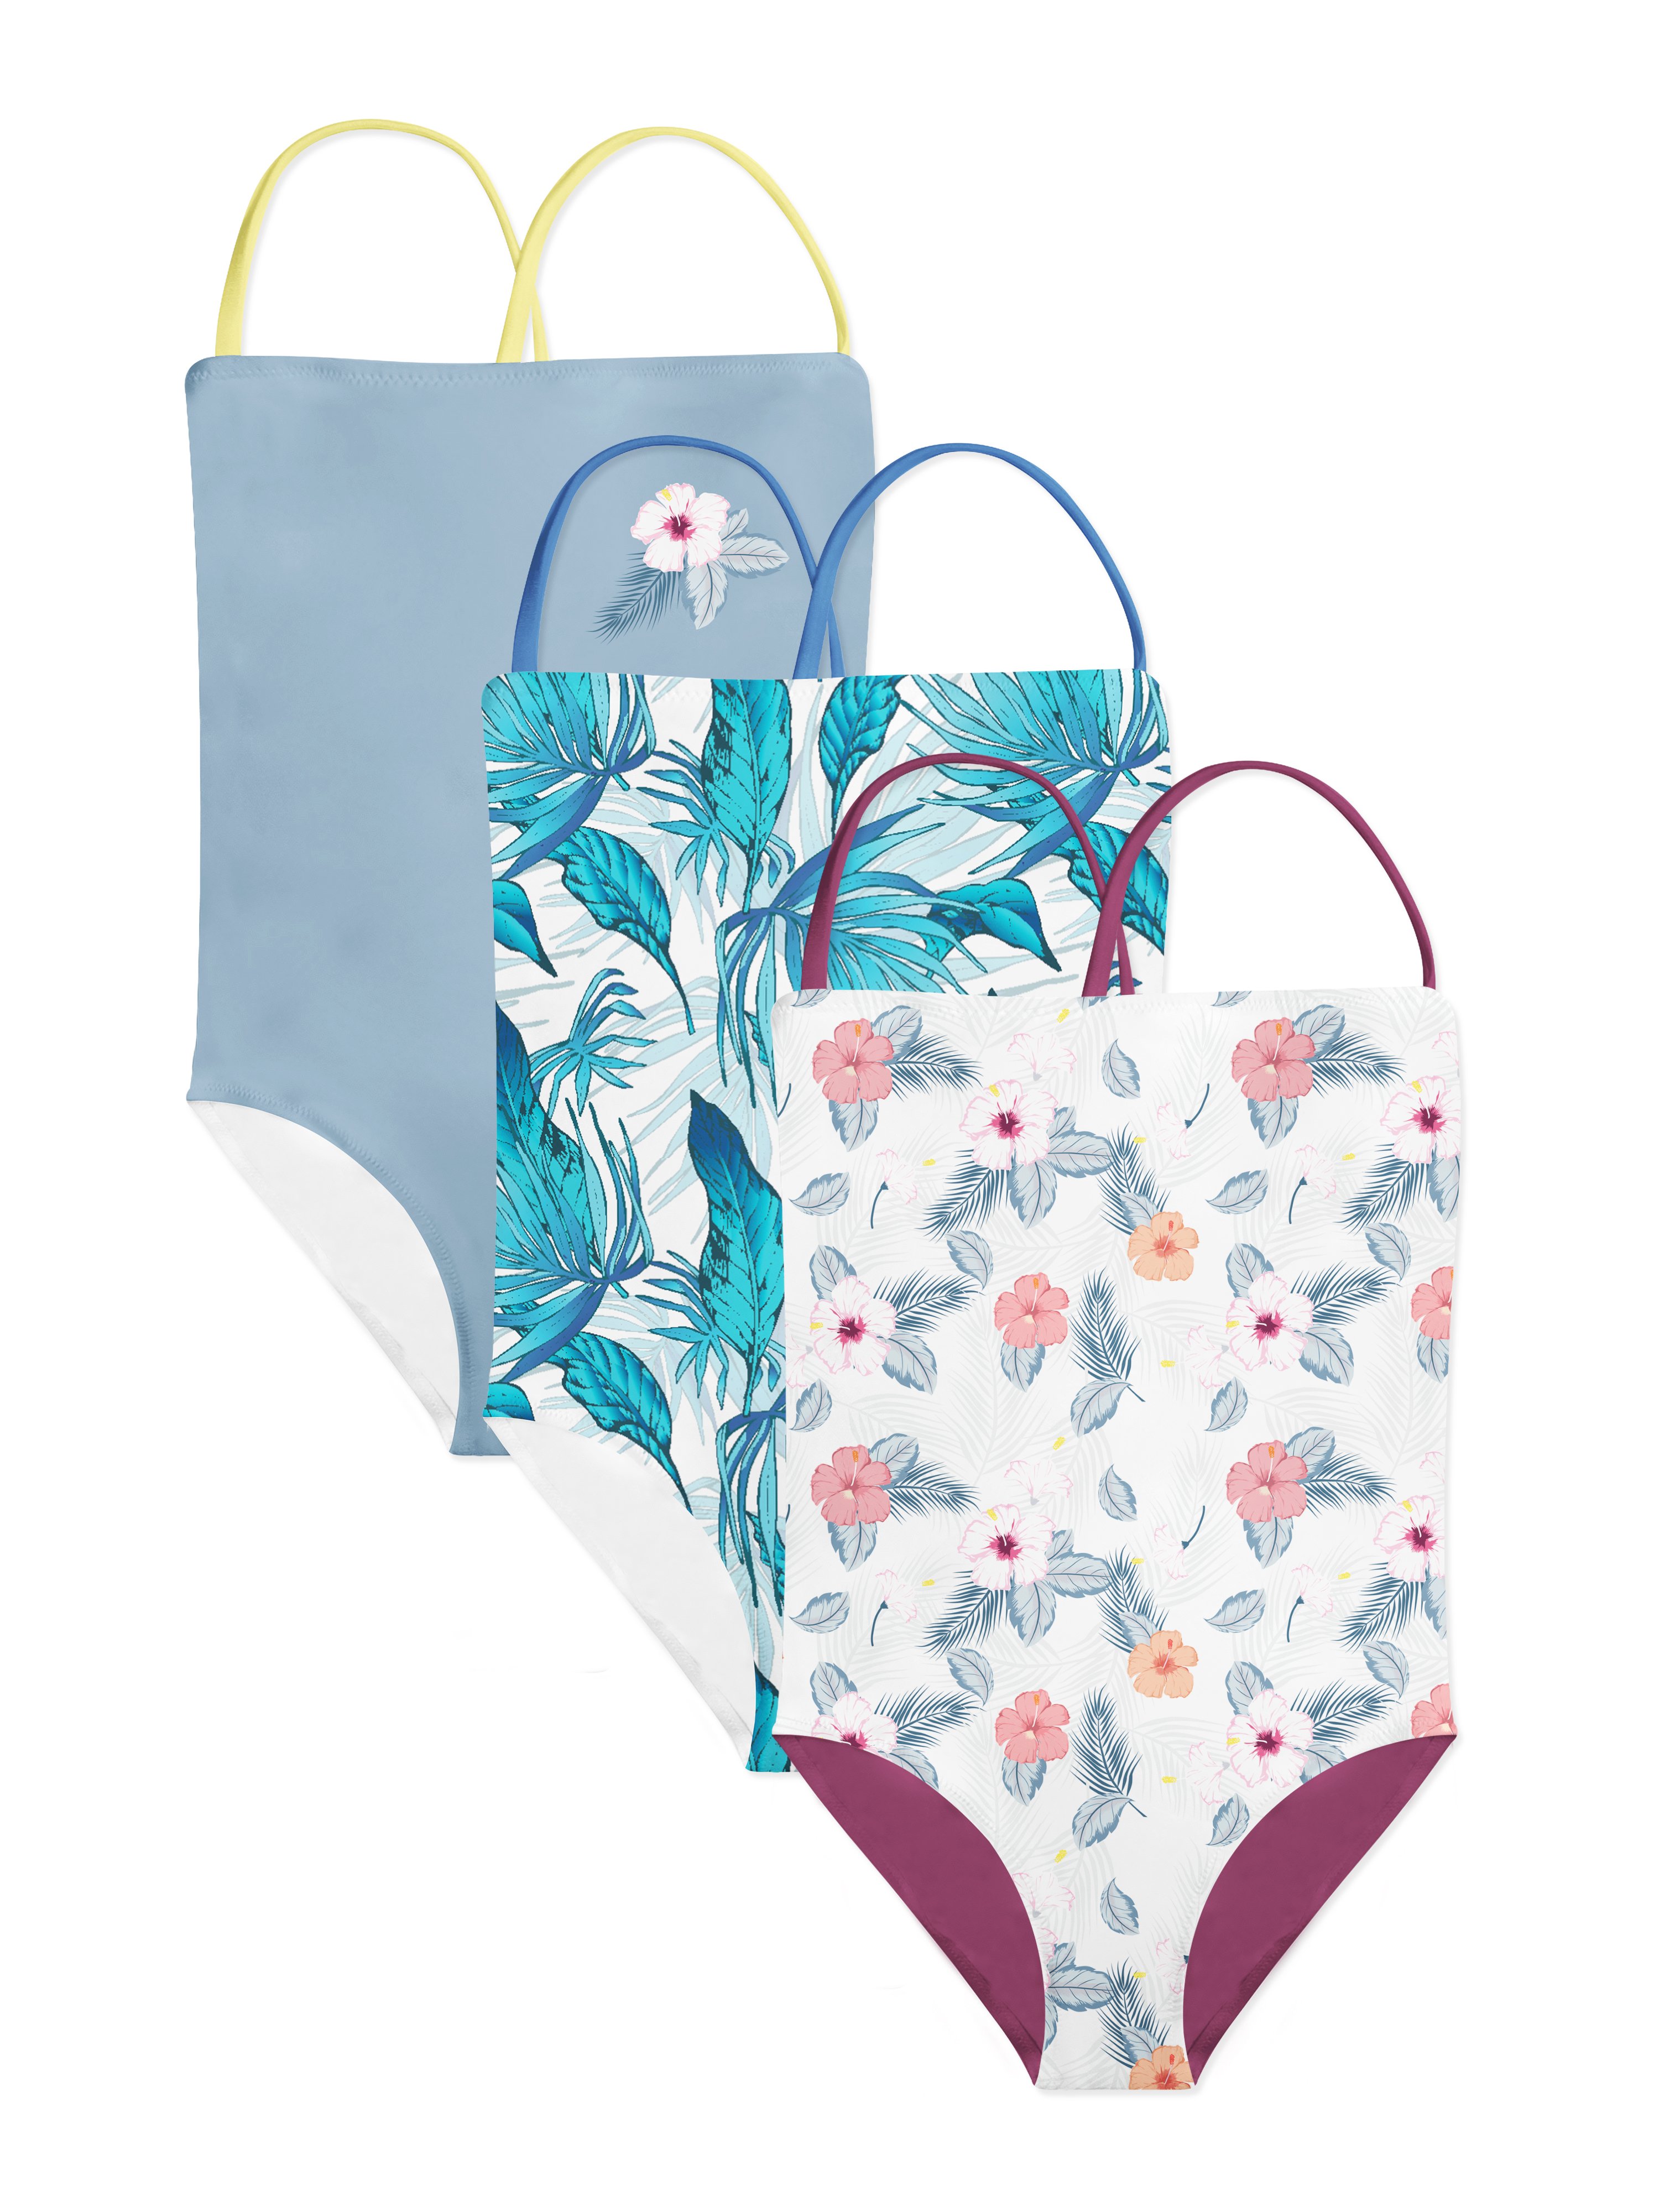 女童婴儿一体式连衣游泳衣品牌服饰设计提案样机模板 Baby